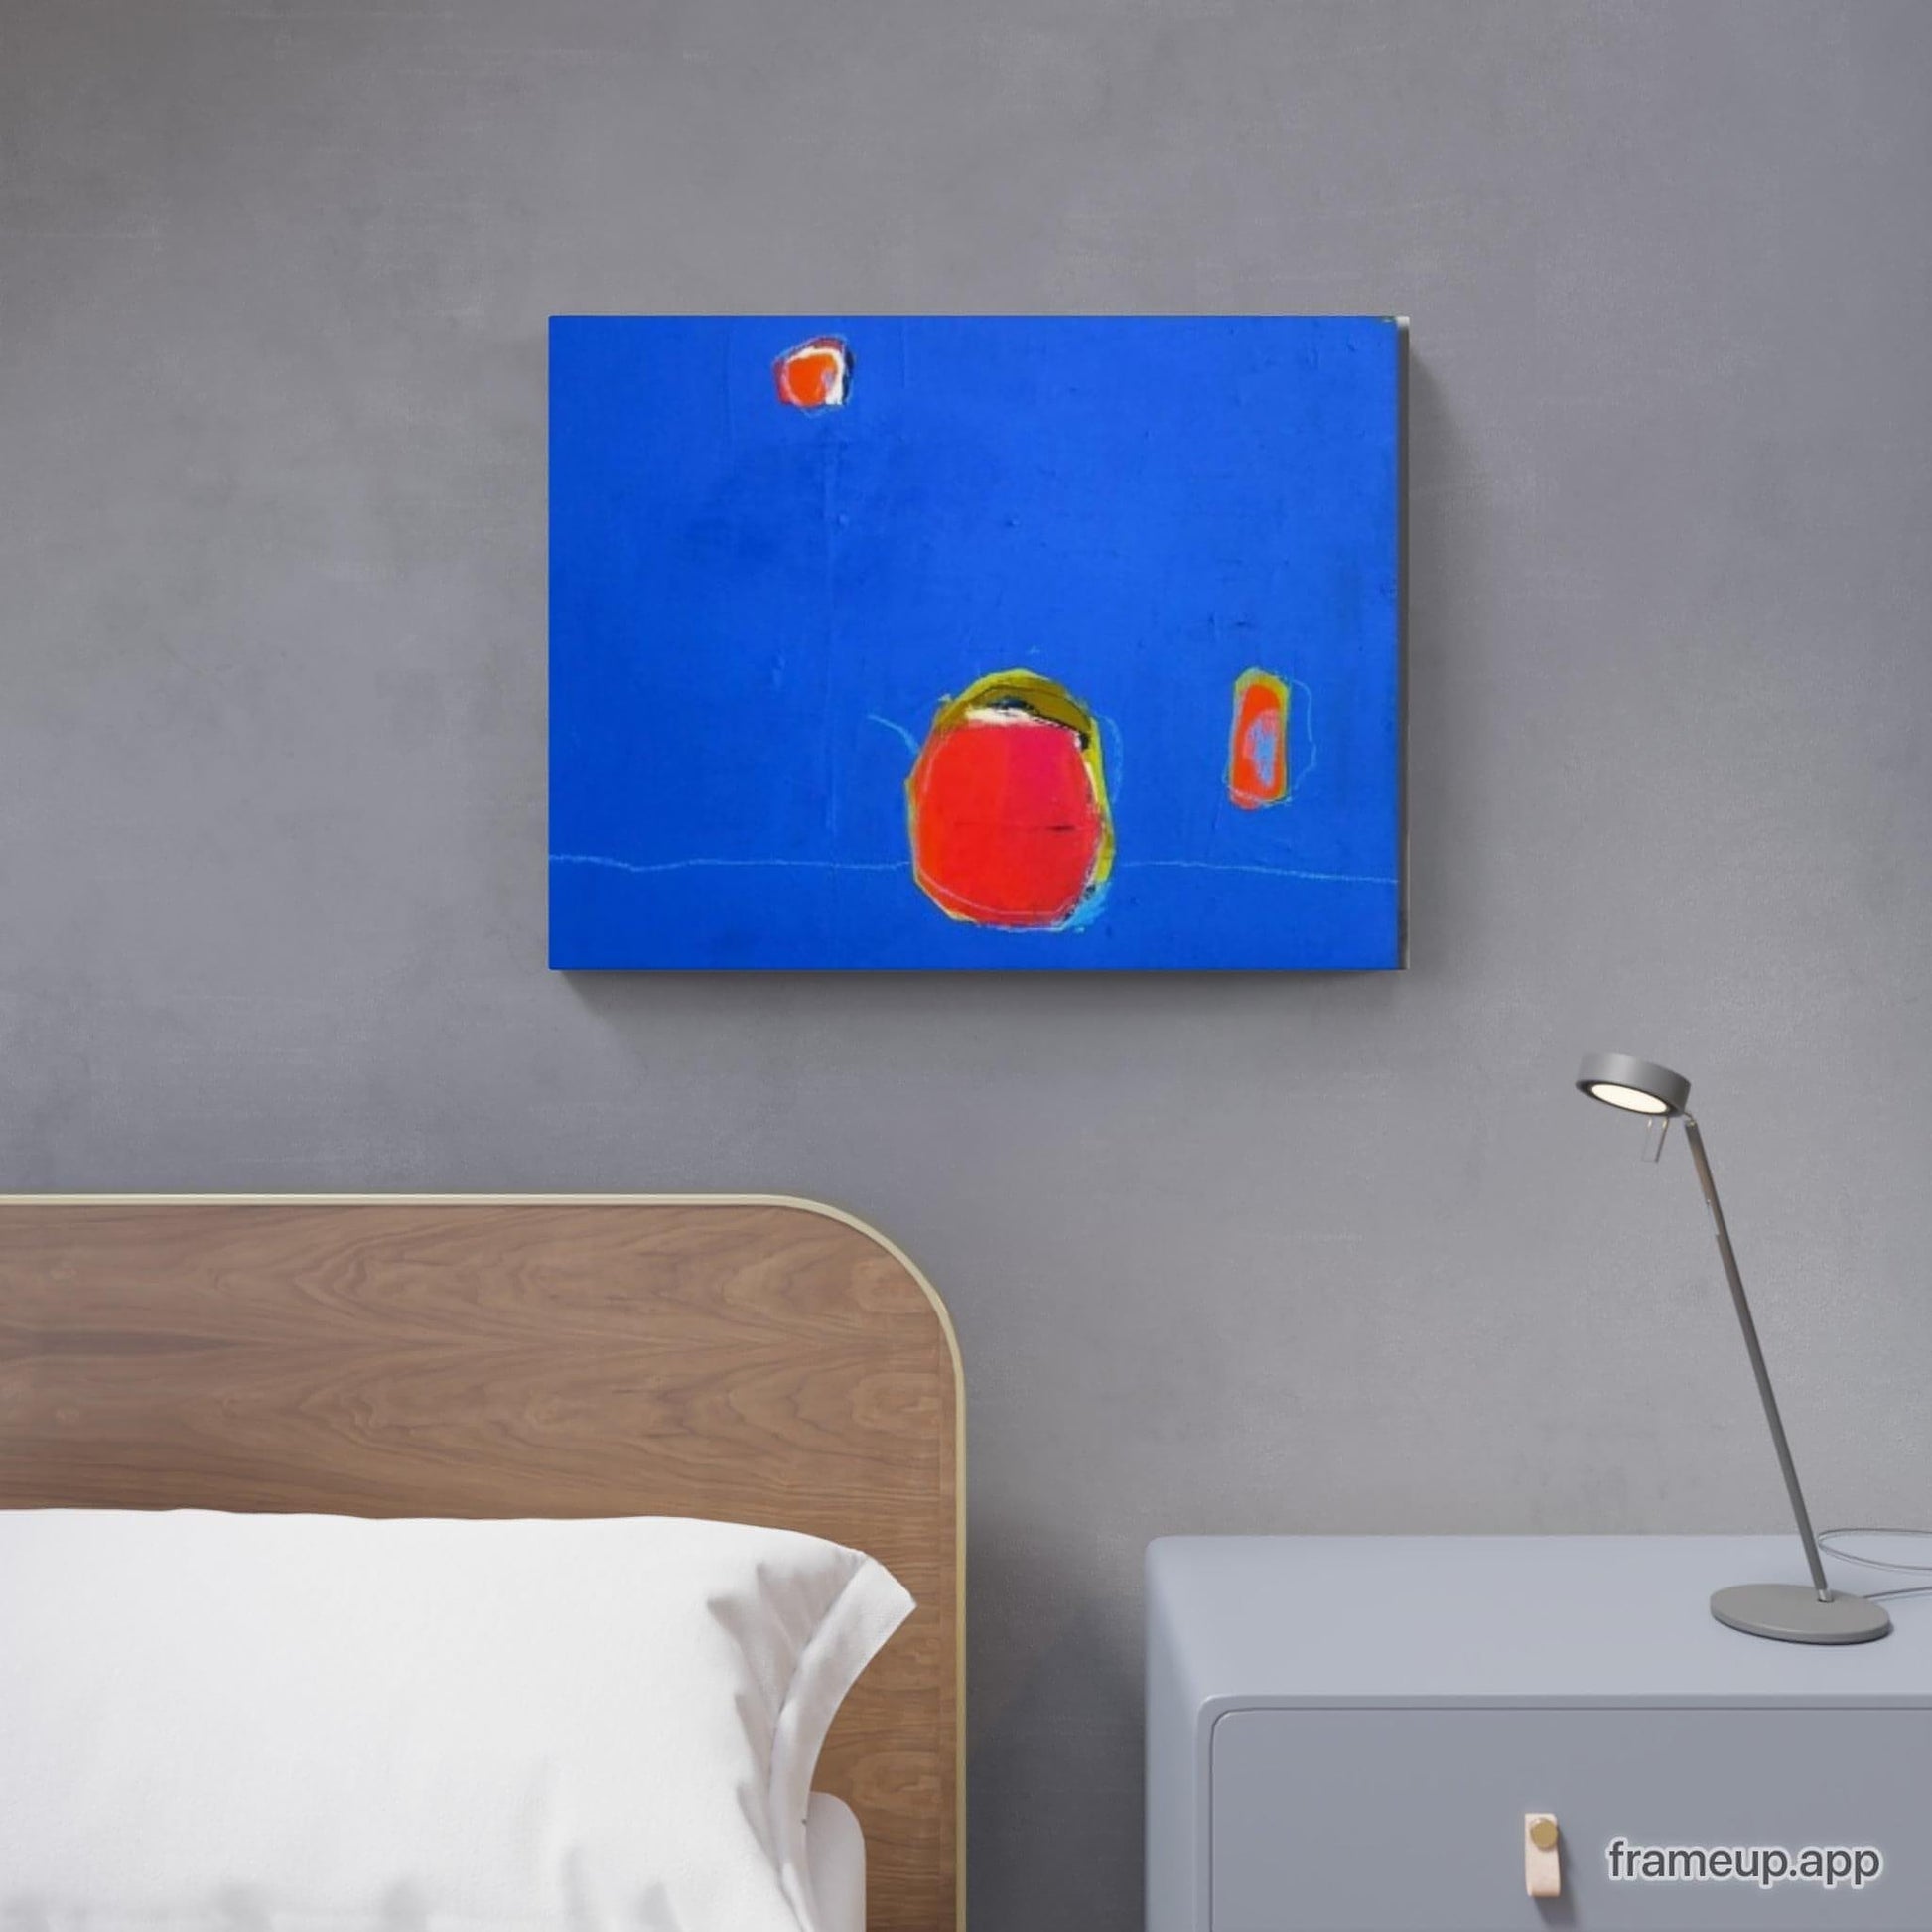  vorhandenes Unikat: Kaffee to go / 50 x 40 cm / blau  abstrakte acrylbilder auf leinwand